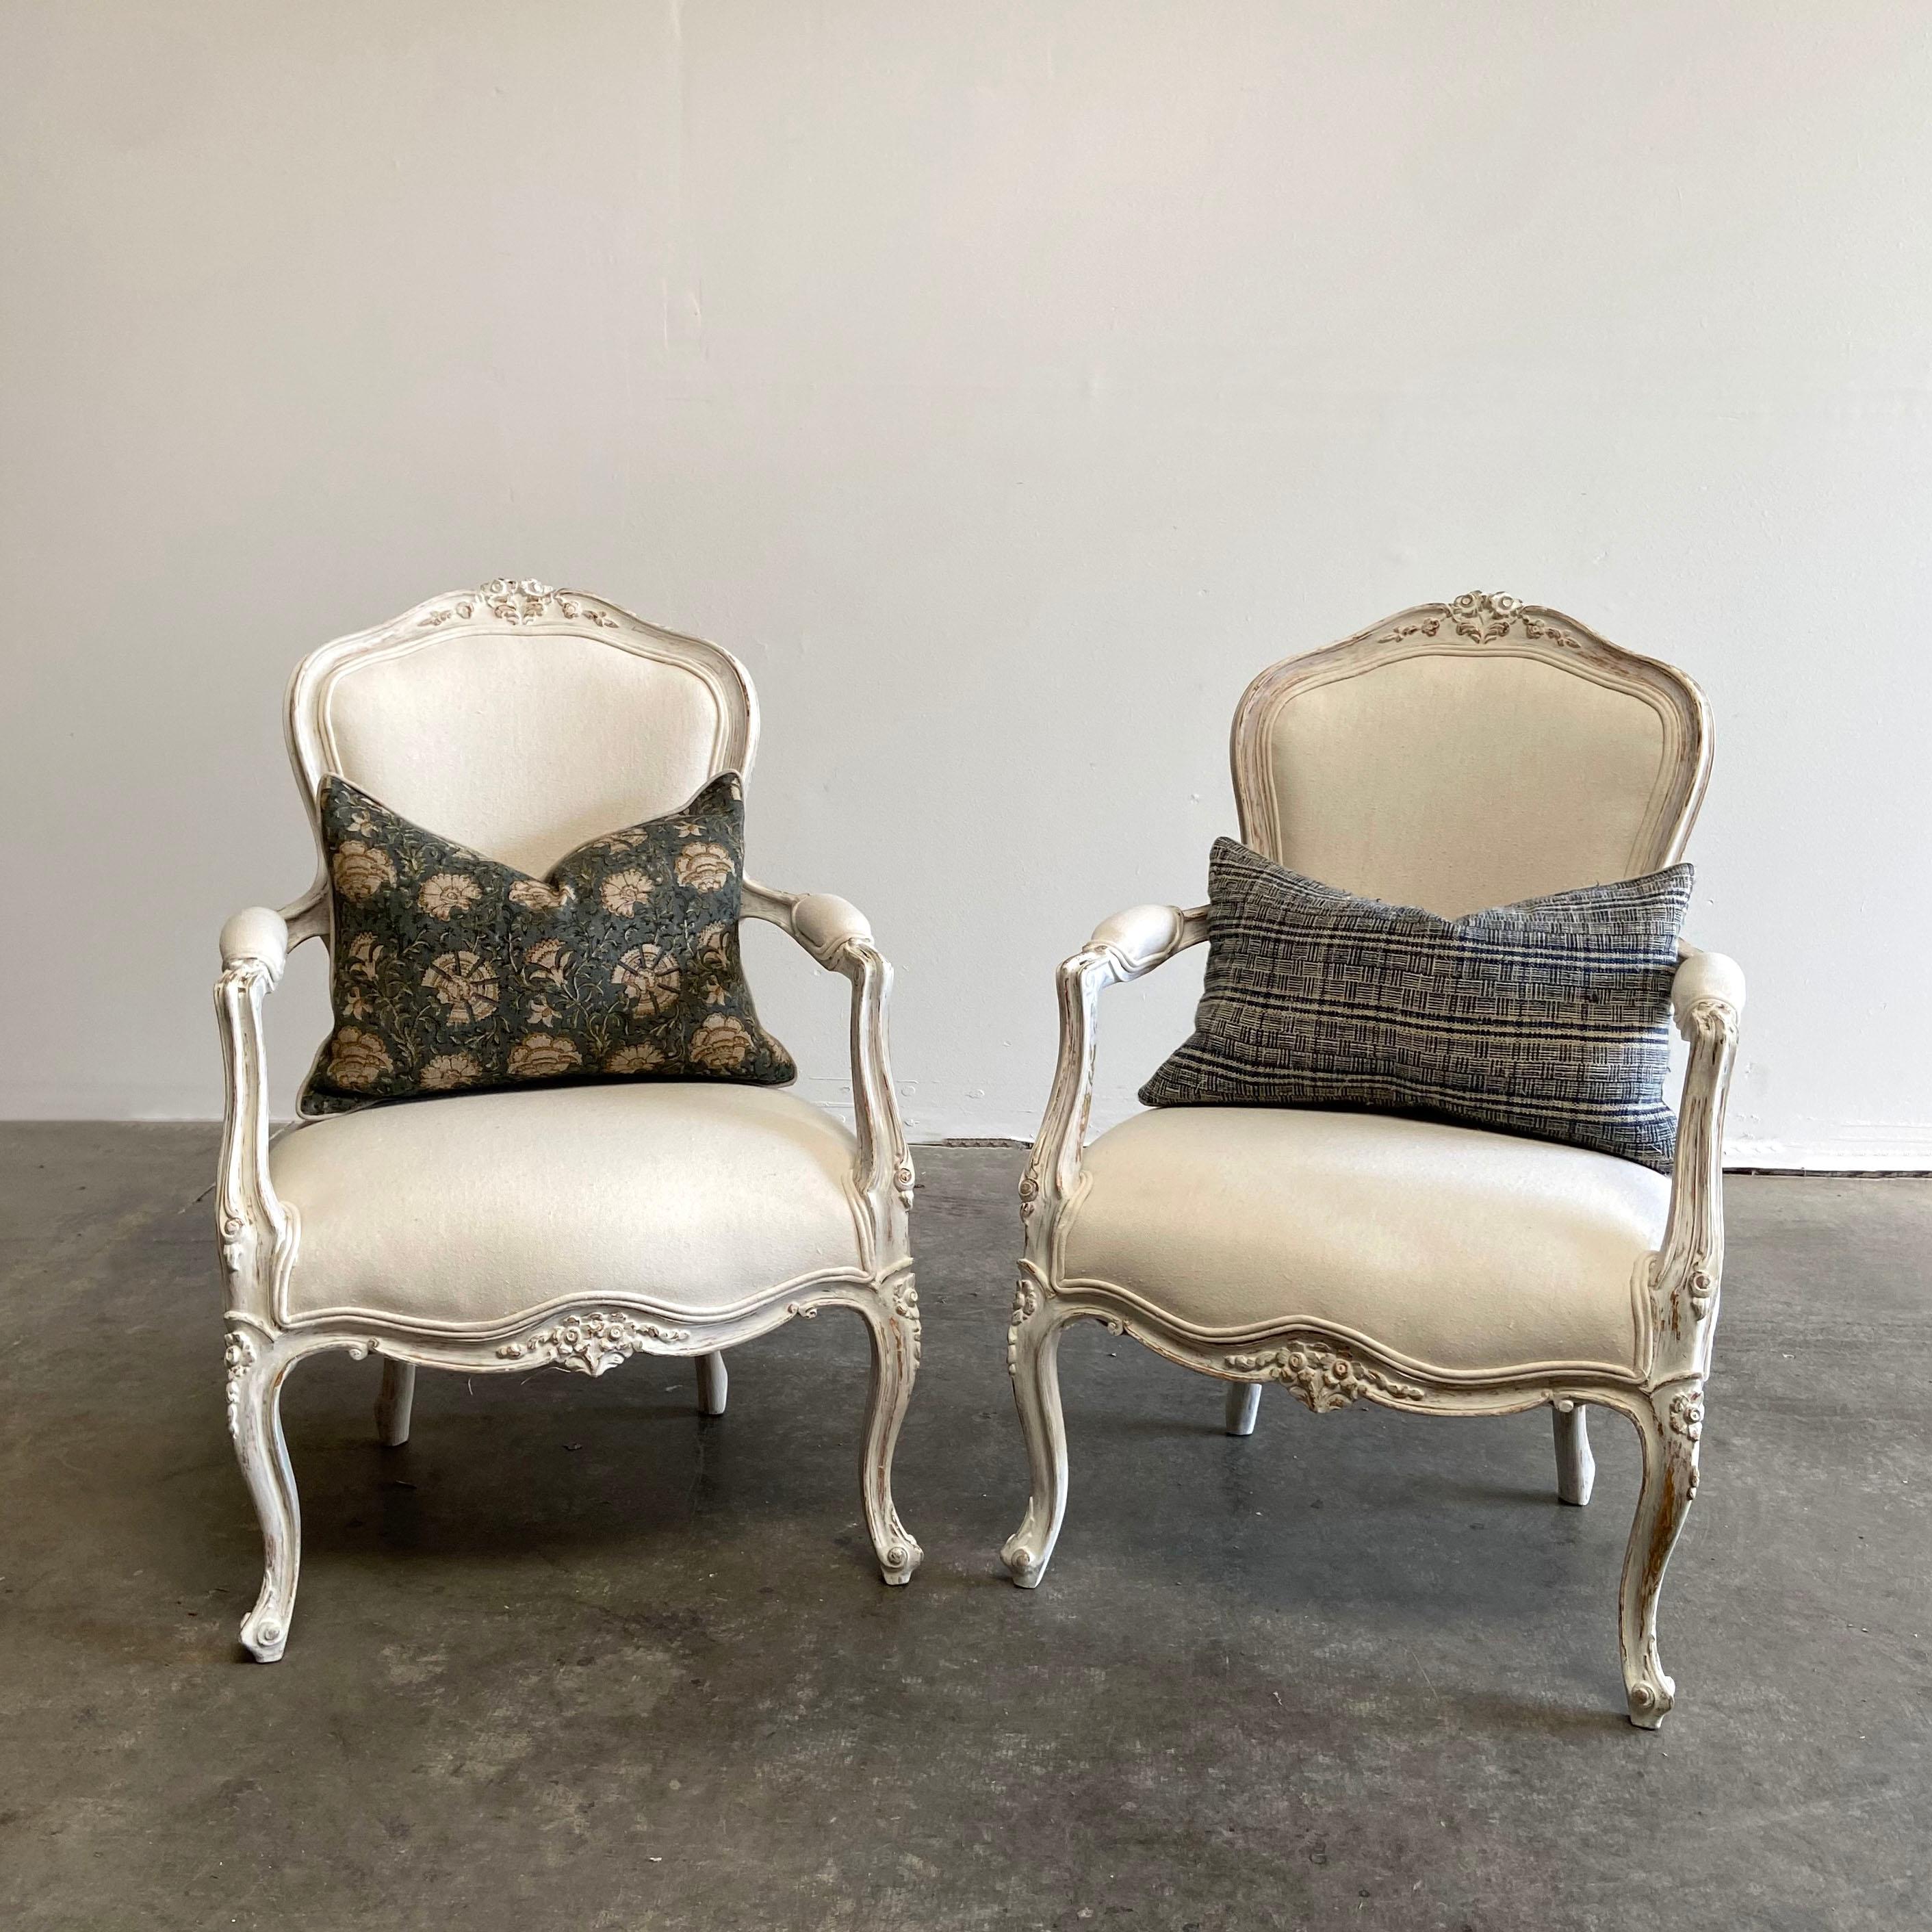 Vintage Paar bemalte und gepolsterte offene Sessel im Stil Louis XV
Wunderschön lackierte Stühle in zartem Weiß mit dezenter antiker Beanspruchung. Austergrau mit goldenen Flecken, die durch die Farbe schimmern. Weiche, abgerundete Schnörkel und